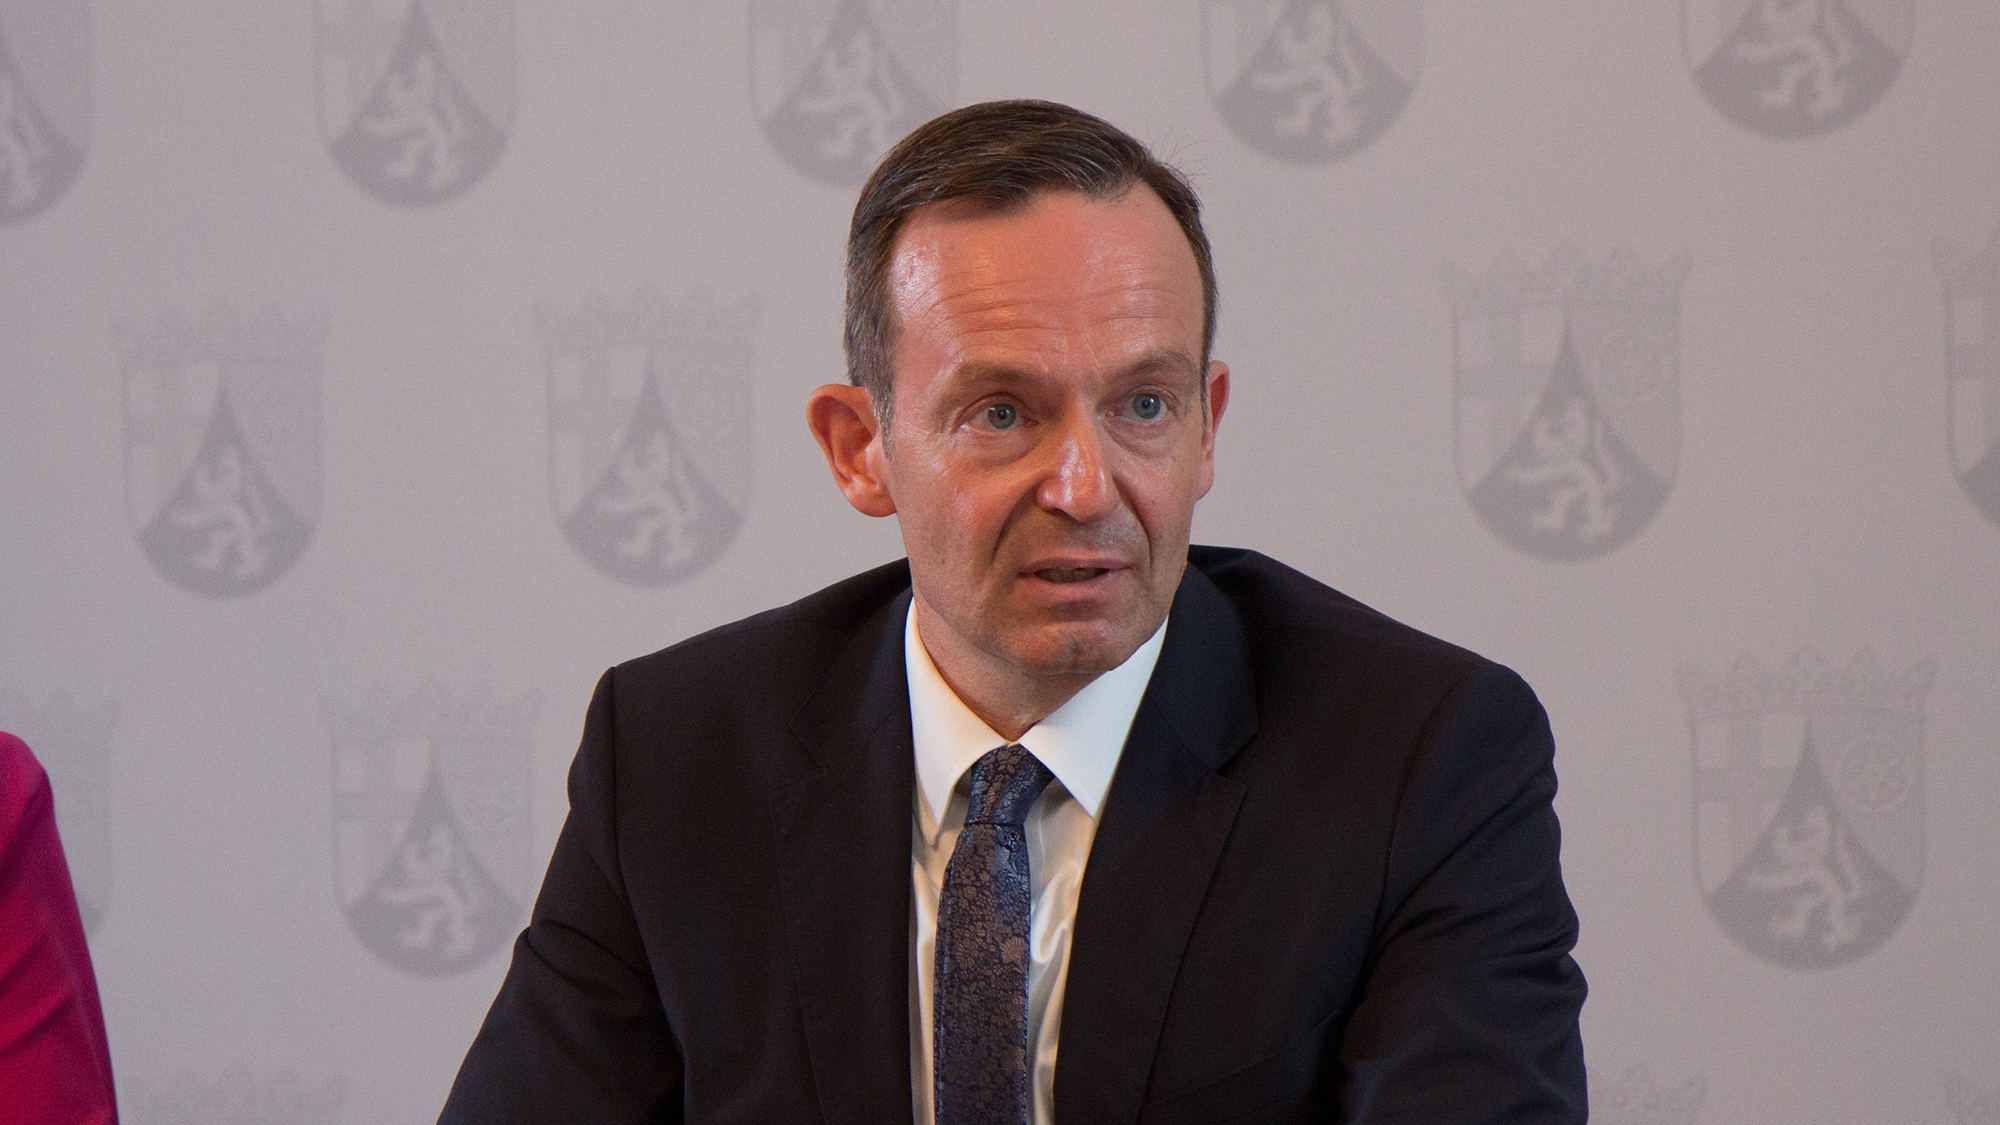 德國交通部長 Volker Wissing 就曾公開表達反對意見。